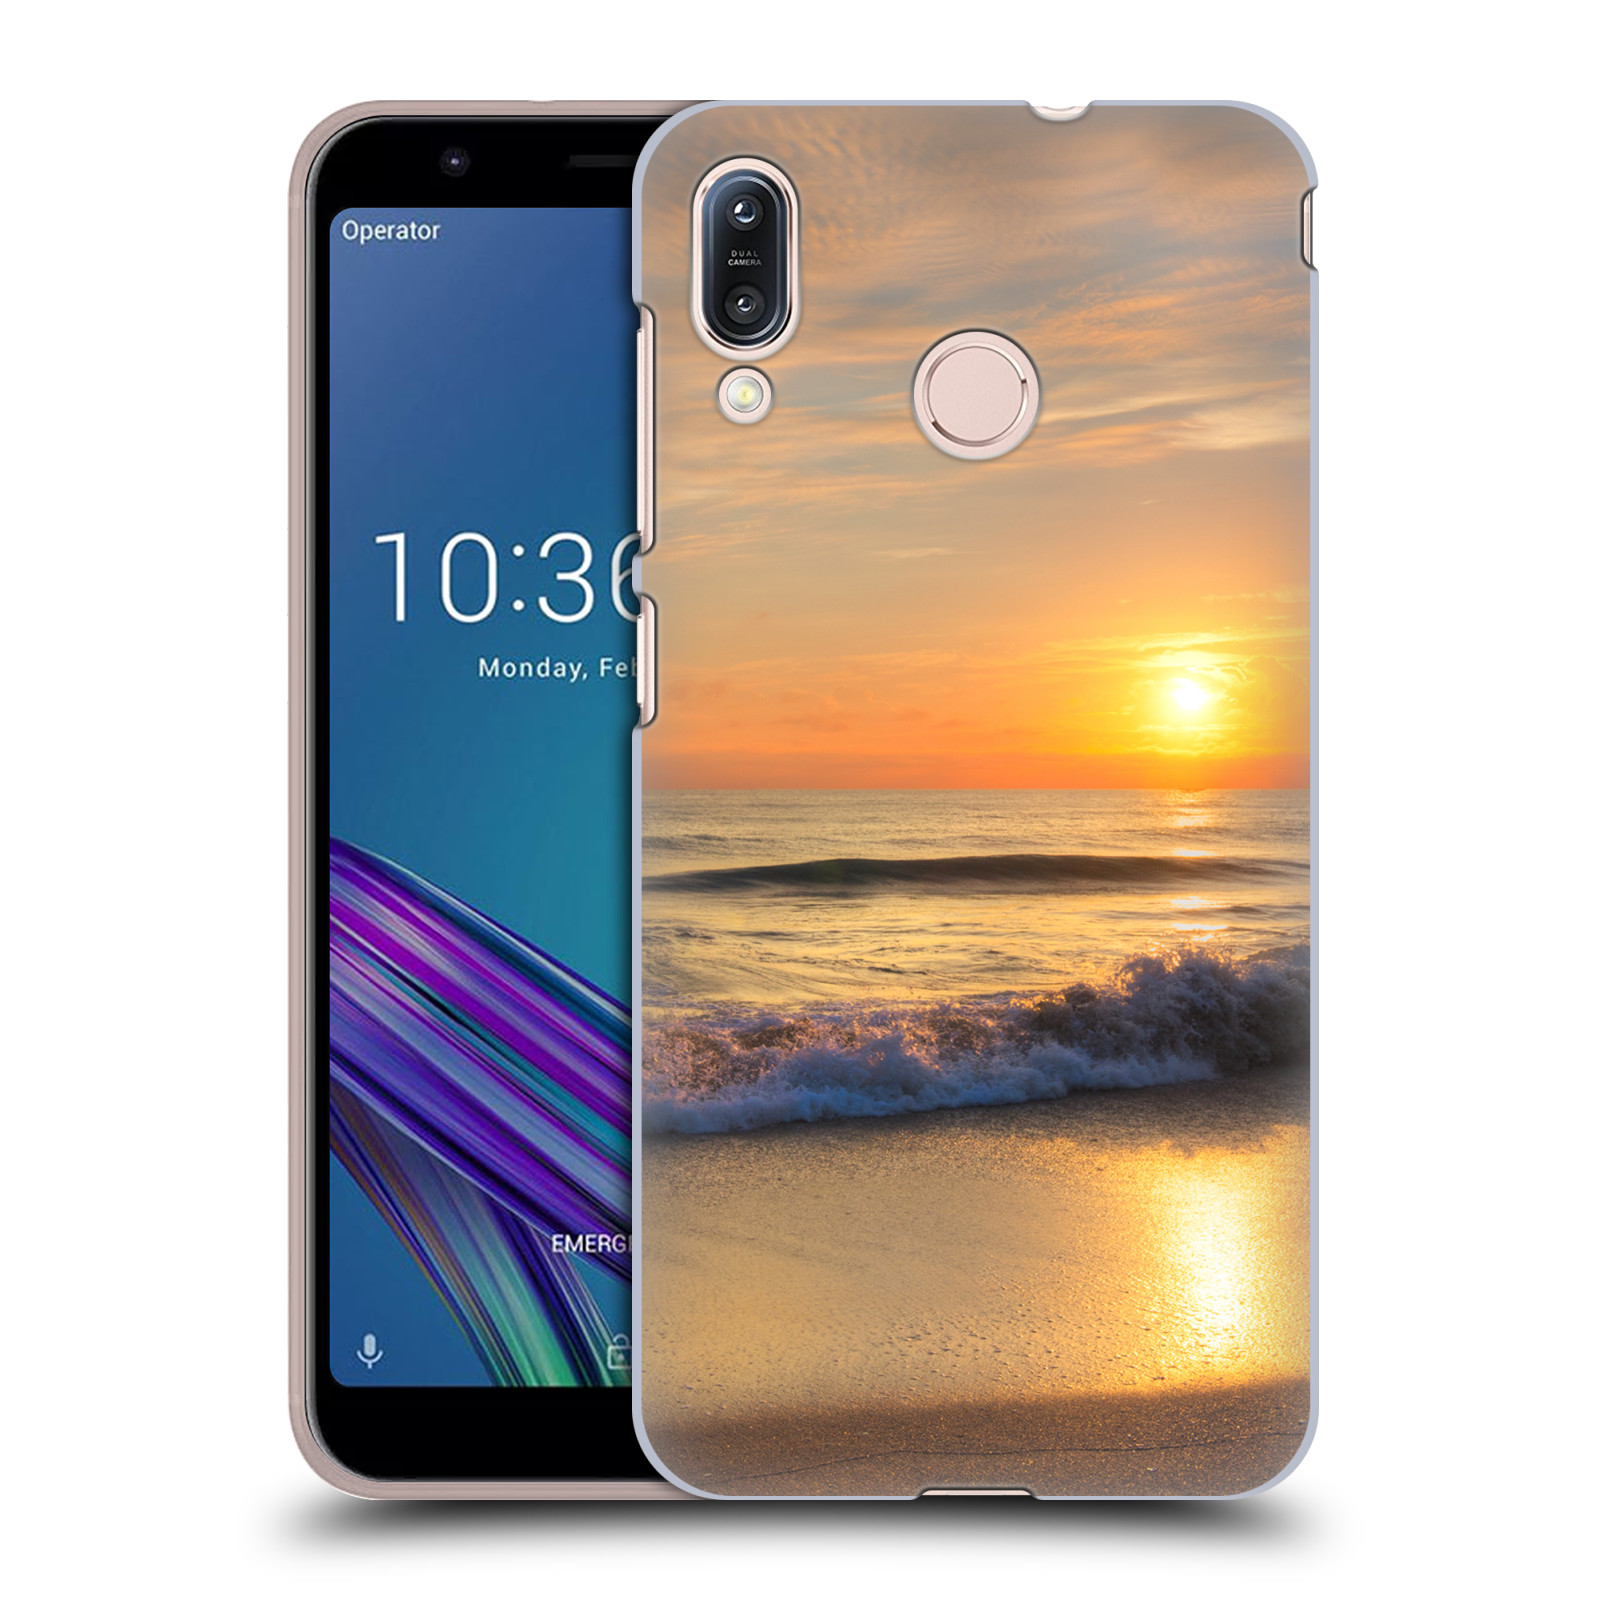 Zadní obal pro mobil Asus Zenfone Max (M1) ZB555KL - HEAD CASE - Krásy přirody - Nádherná pláž